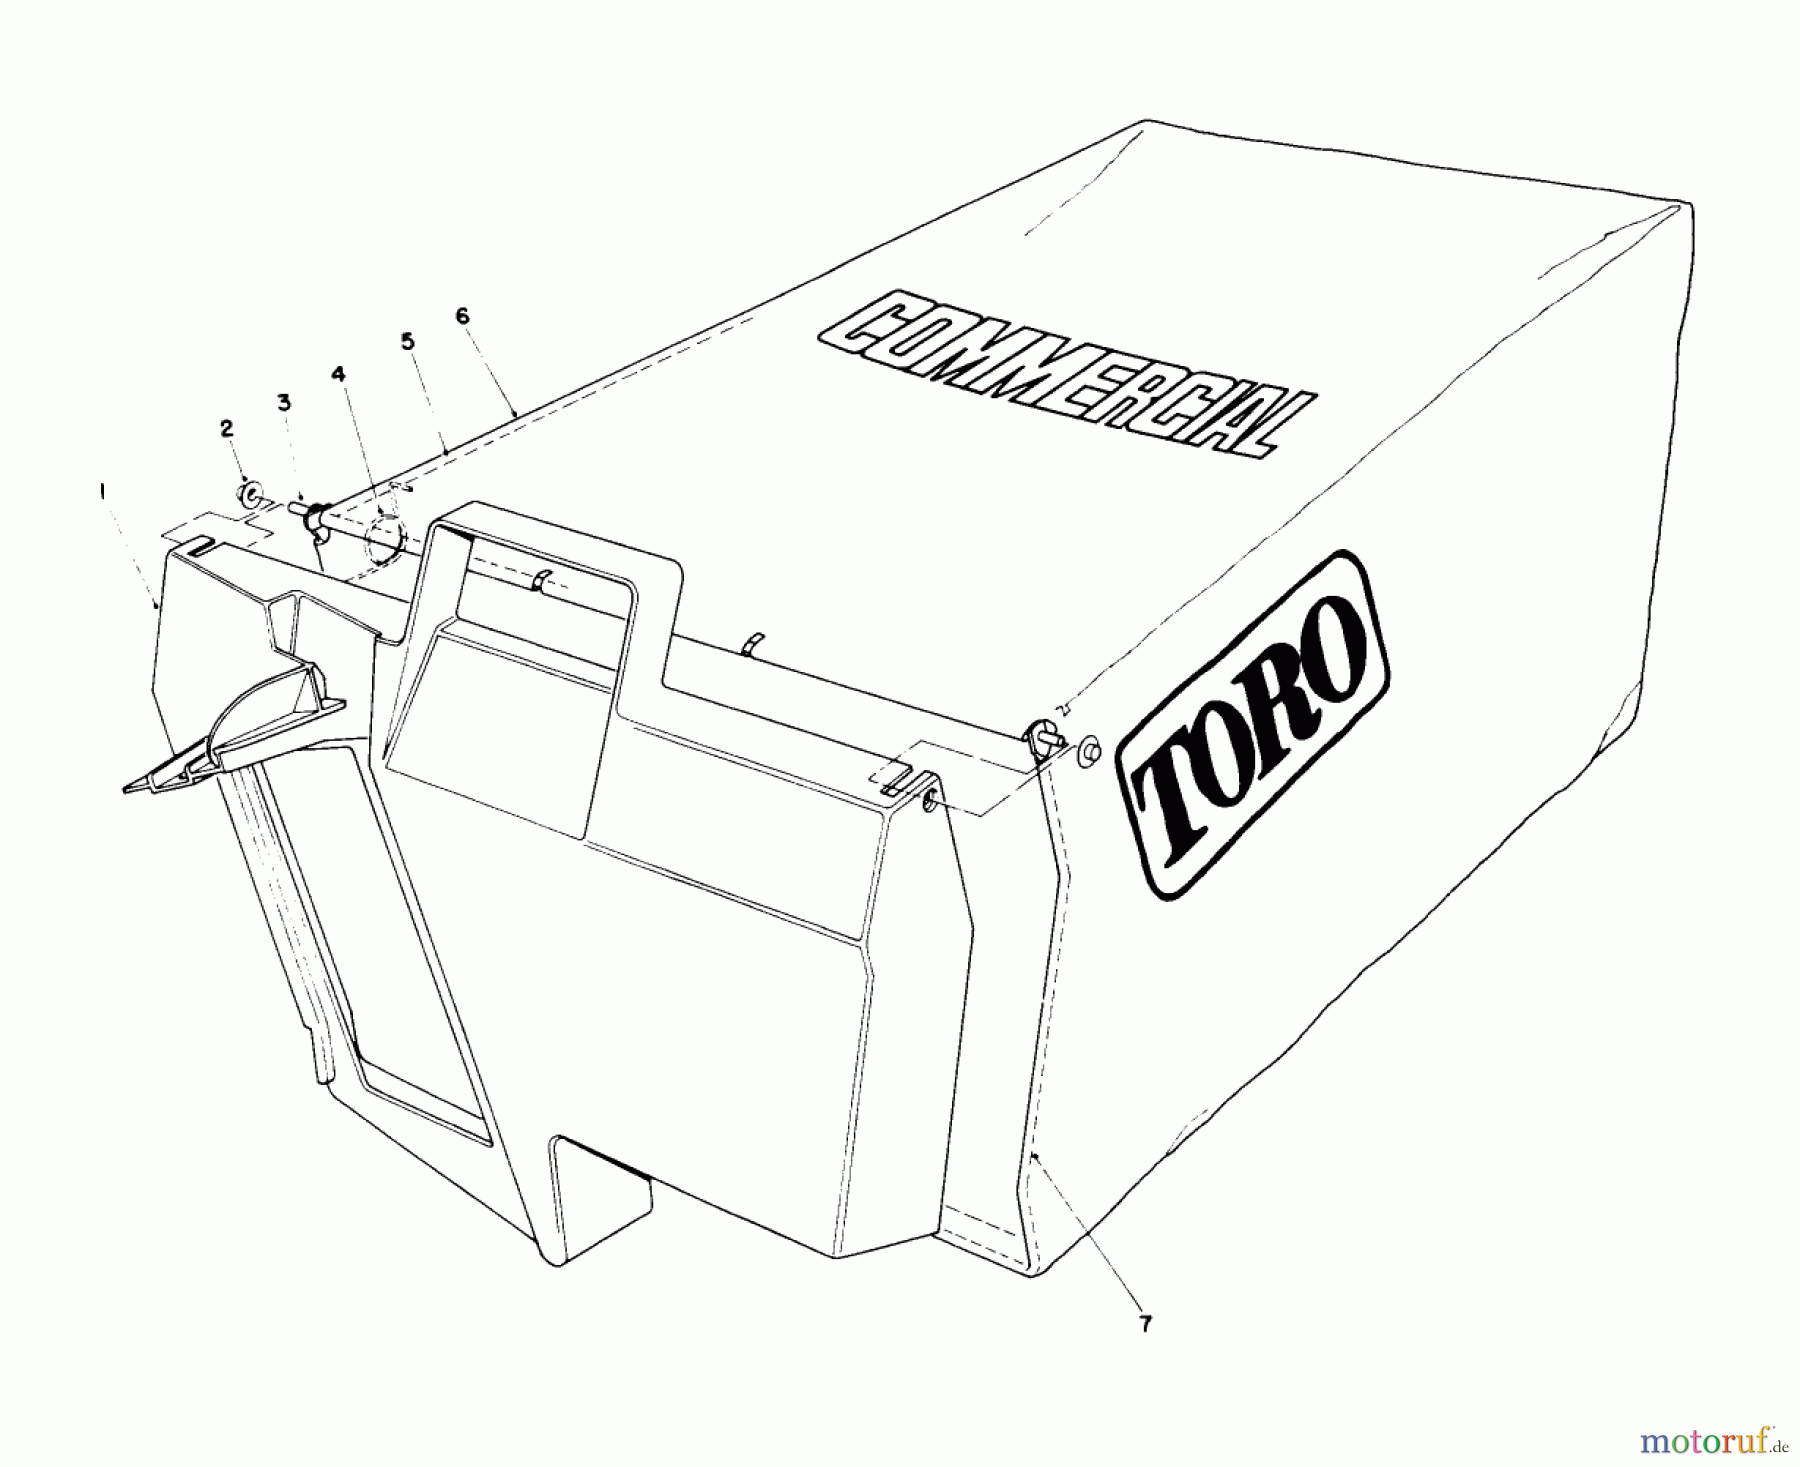  Toro Neu Mowers, Walk-Behind Seite 2 22151 - Toro Lawnmower, 1995 (5900001-5999999) GRASS BAG ASSEMBLY NO. 11-5609